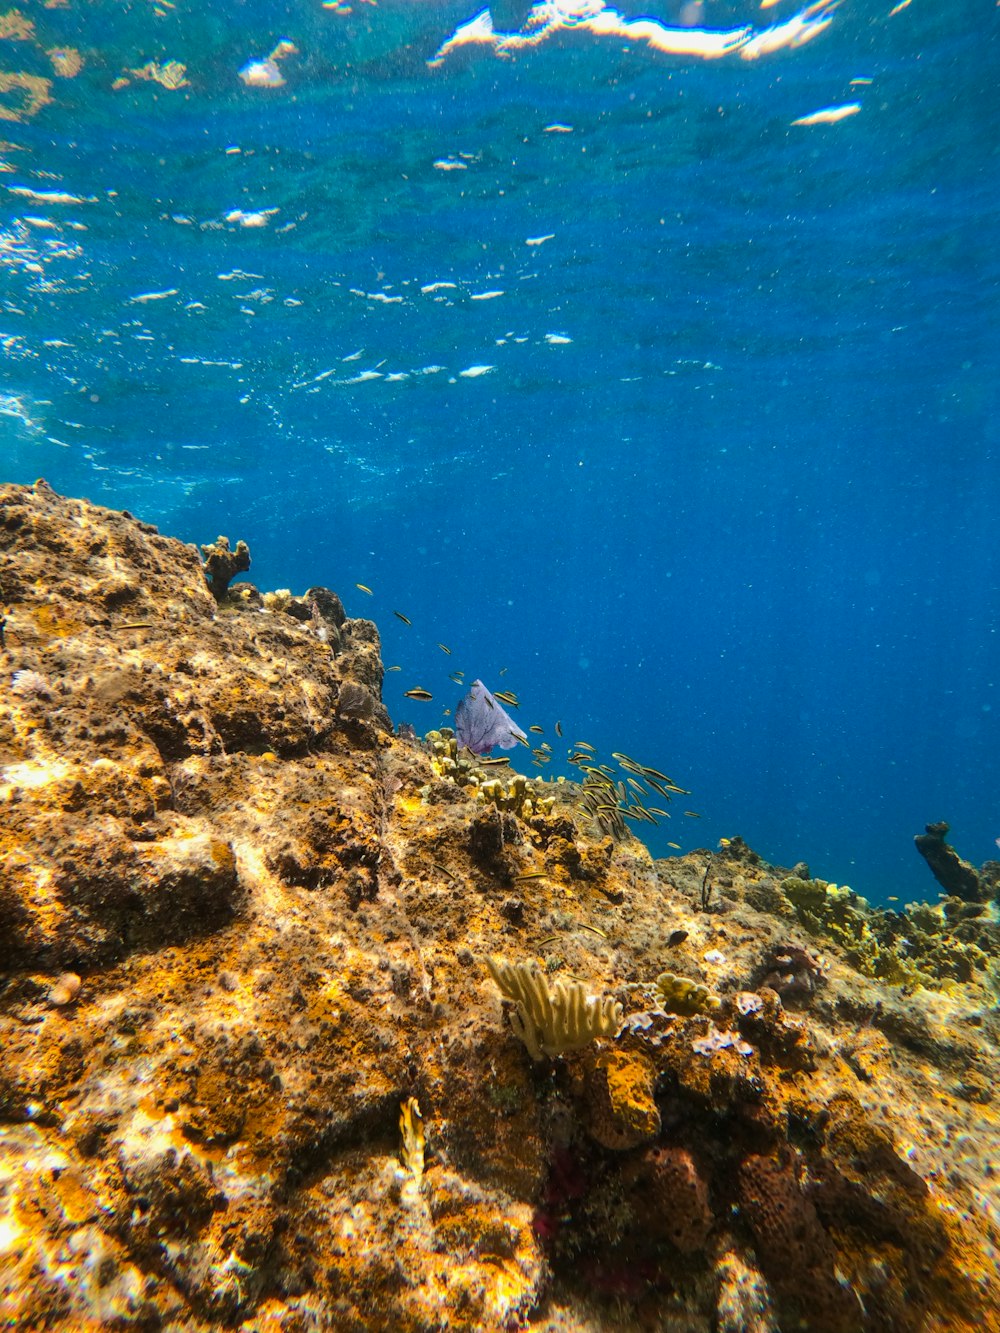 Una vista subacquea di una barriera corallina con un pesce